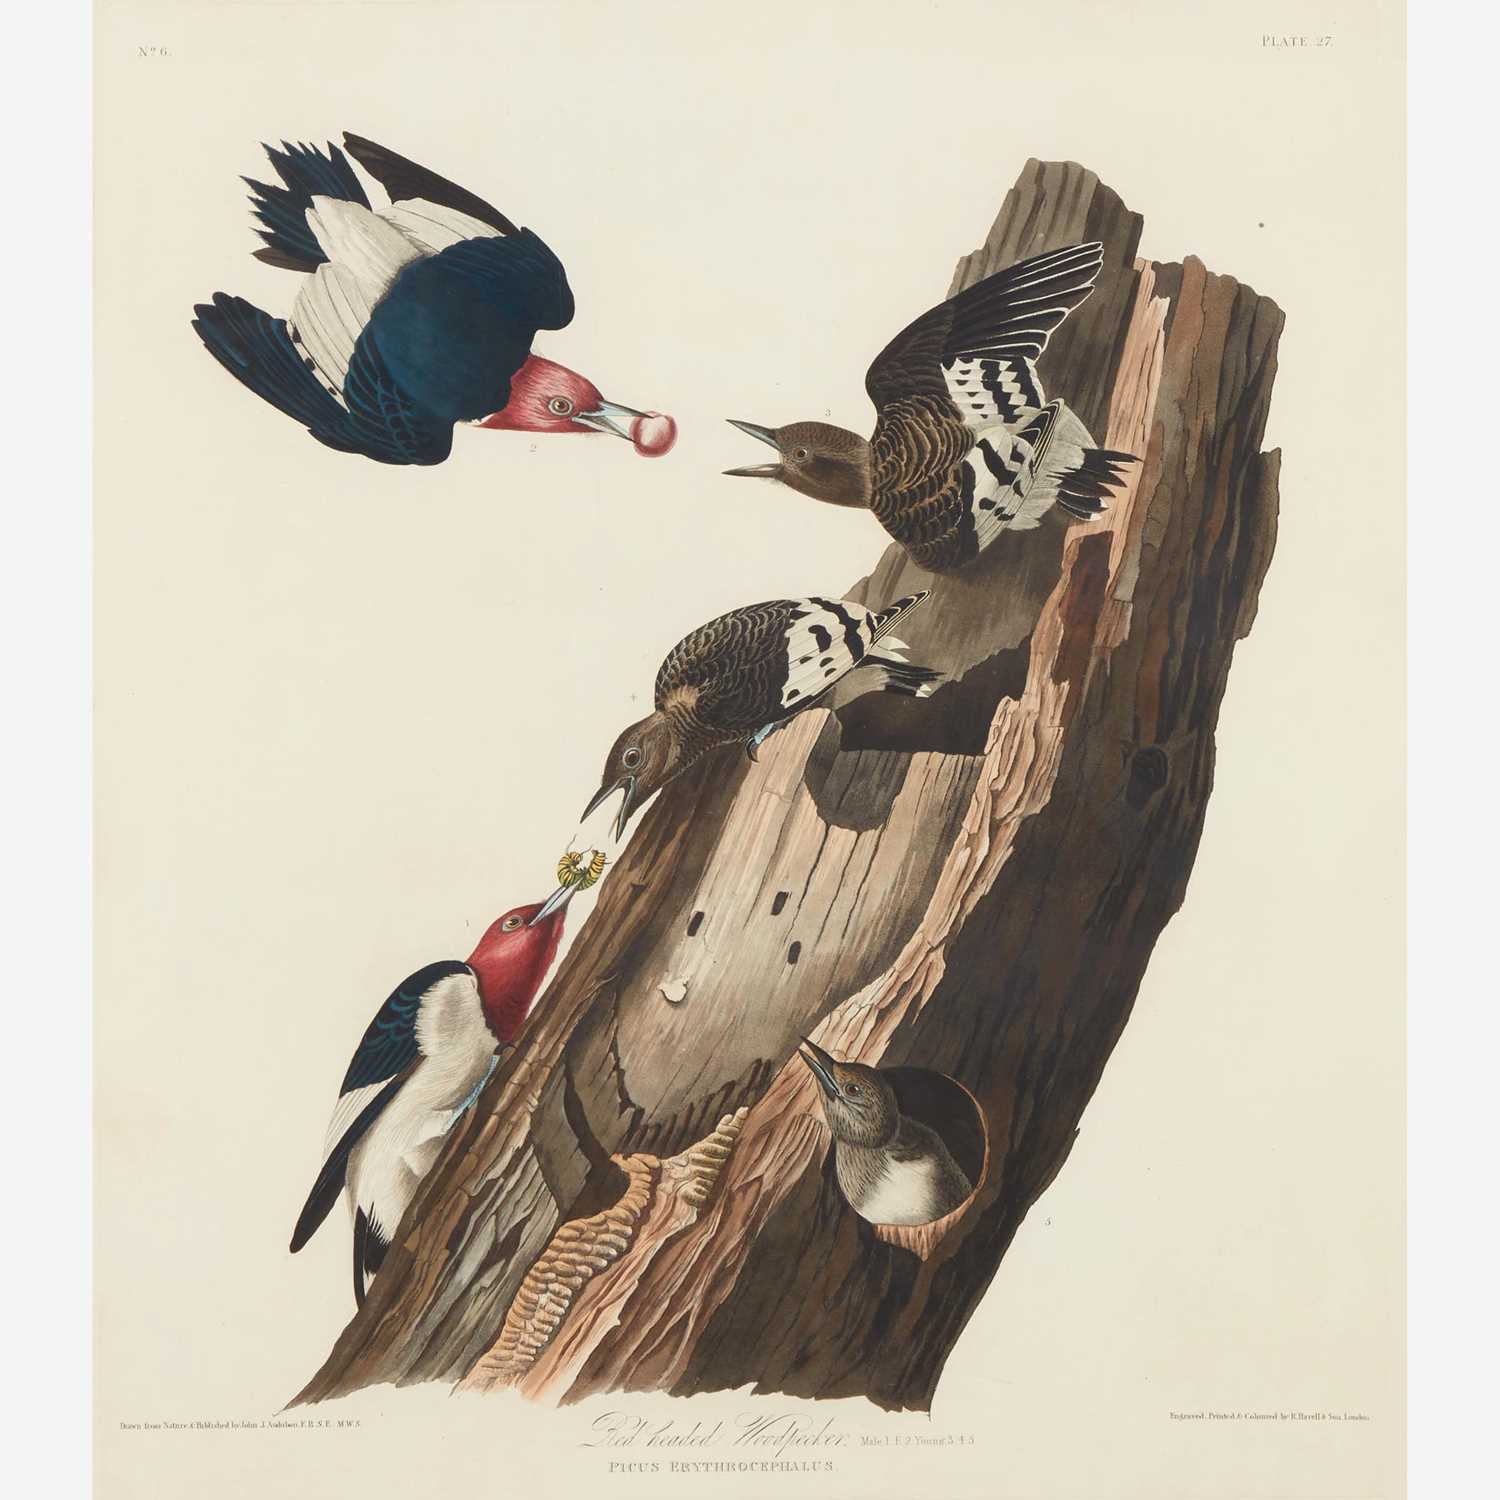 Lot 116 - [Prints] Audubon, John James